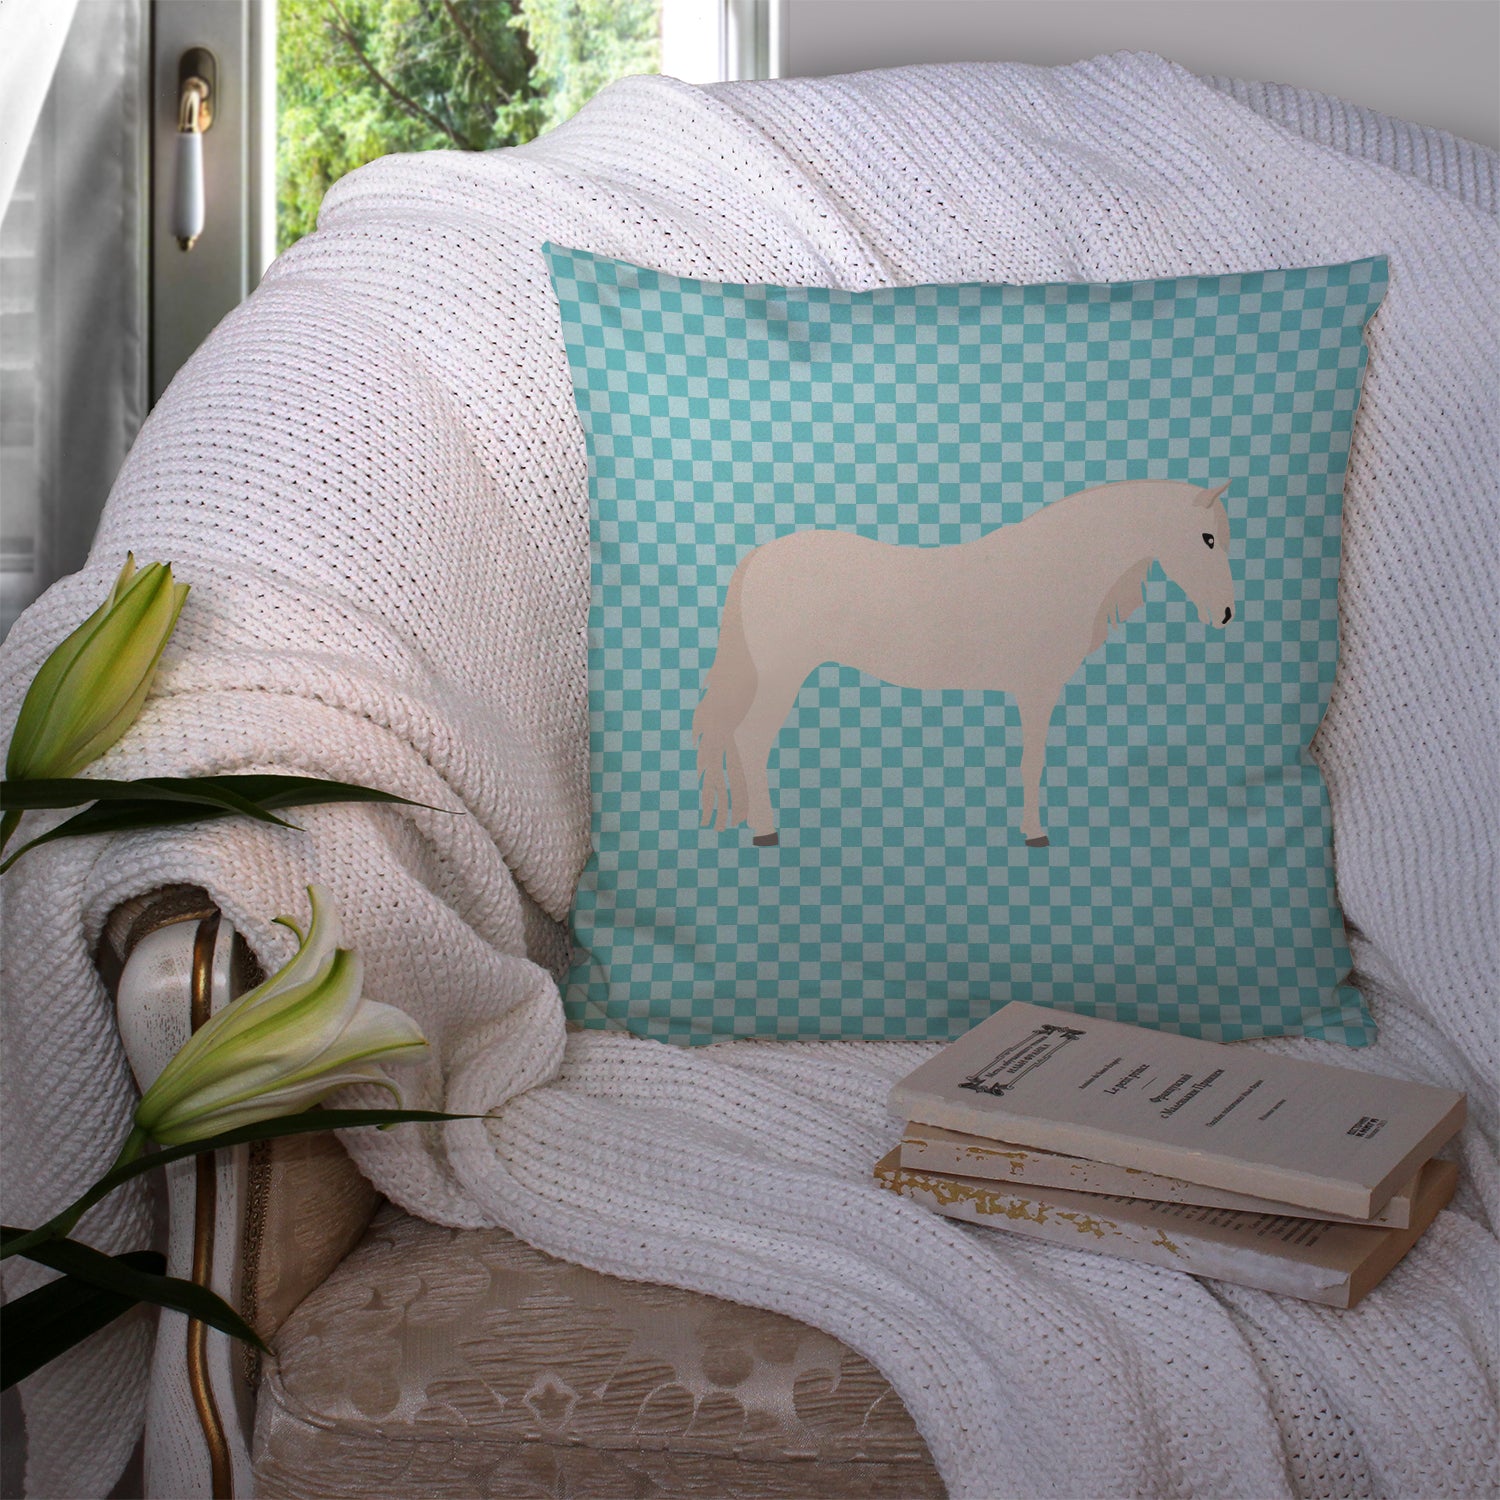 Paso Fino Horse Blue Check Fabric Decorative Pillow BB8079PW1414 - the-store.com